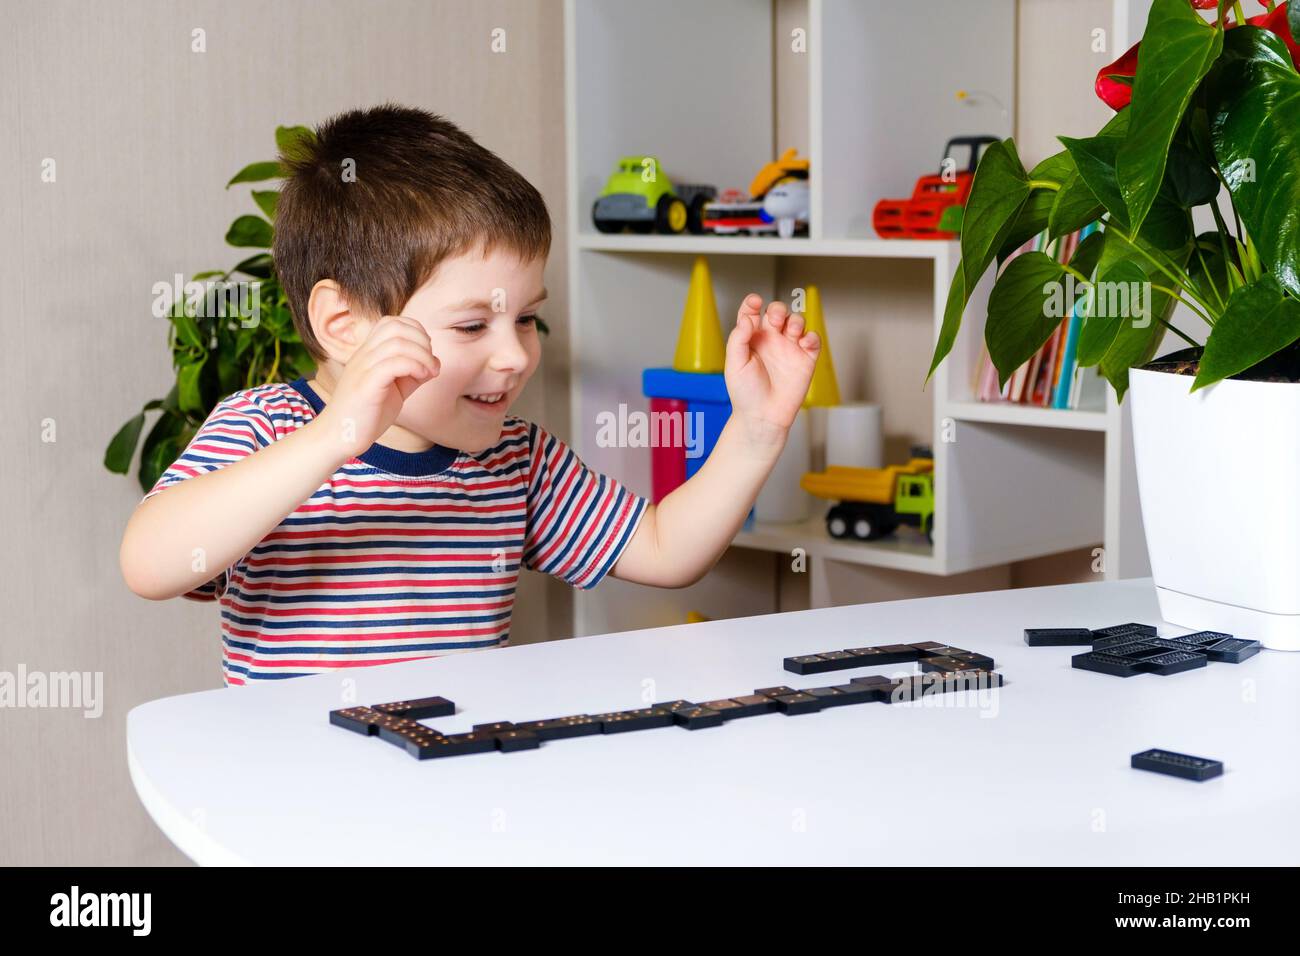 Un garçon heureux de 4 ans joue un jeu de dominos, s'amuse et aime le jeu. Banque D'Images